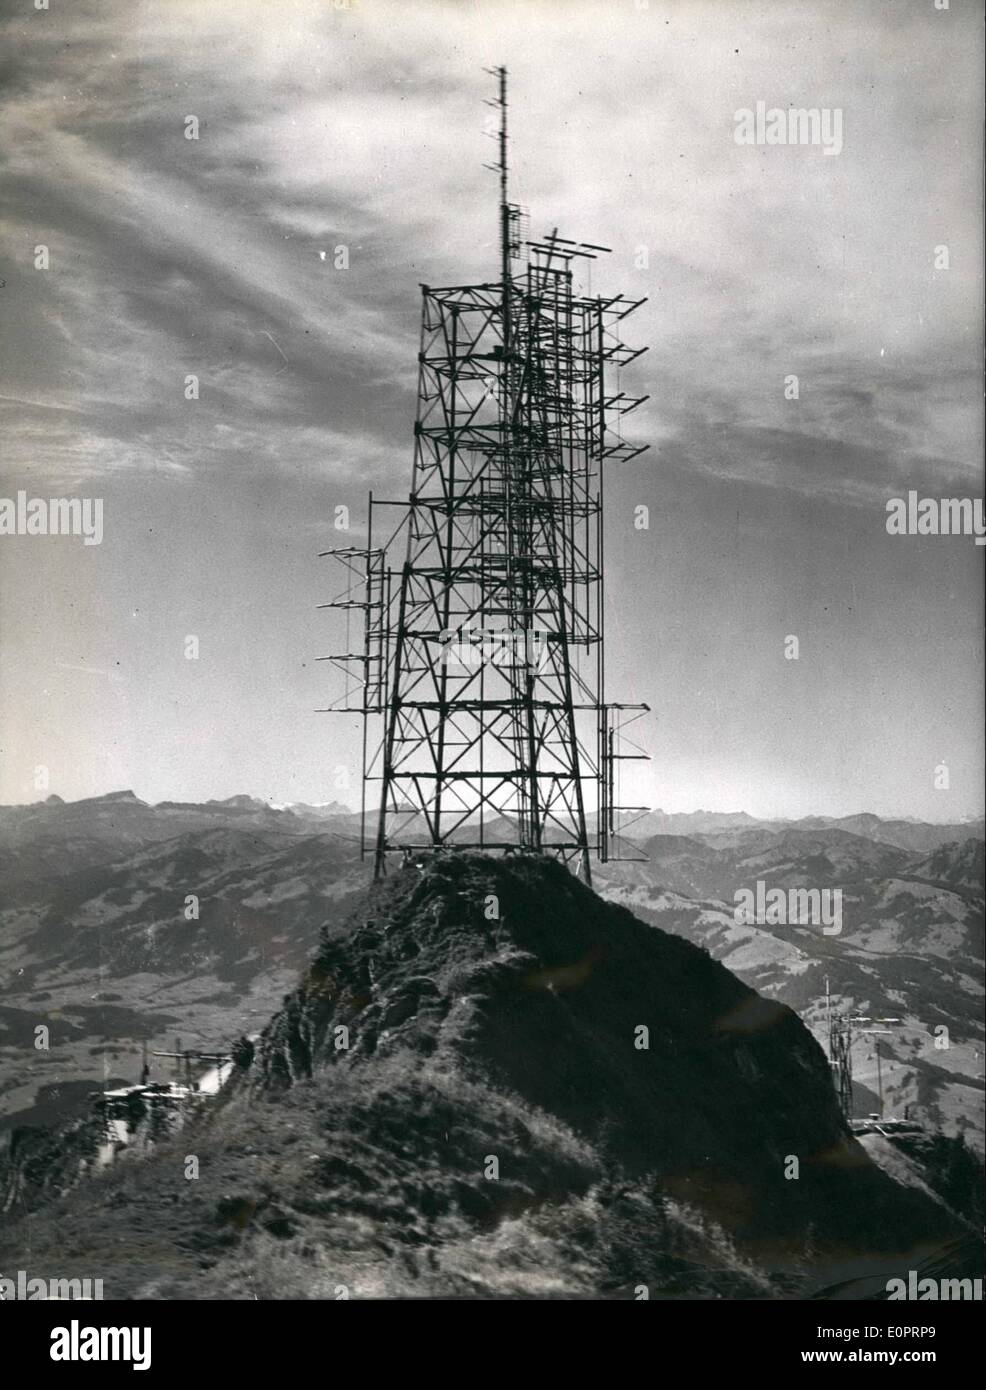 11 novembre 1956 - perspective très fin donne une très belle émission diffusée : au nord-est de l'Allgau Alpes Sonthofen (Allemagne) la montagne ''Grunten s'élève. Elle est réputée pour son haut à partir de là une belle à la tour est possible. Par conséquent, la radiodiffusion et de la télévision bavaroise occupait le haut de l'Grunten. En 1952, la radiodiffusion bavaroise a établi une station ondes courtes ultra à l'Grunten et maintenant la télévision bavaroise va envoyer ses émissions quand la nouvelle station de télévision sera prêt cet hiver. Un immense échafaudage acier monte vers le ciel. Il s'étend jusqu'à 50 mètres Banque D'Images